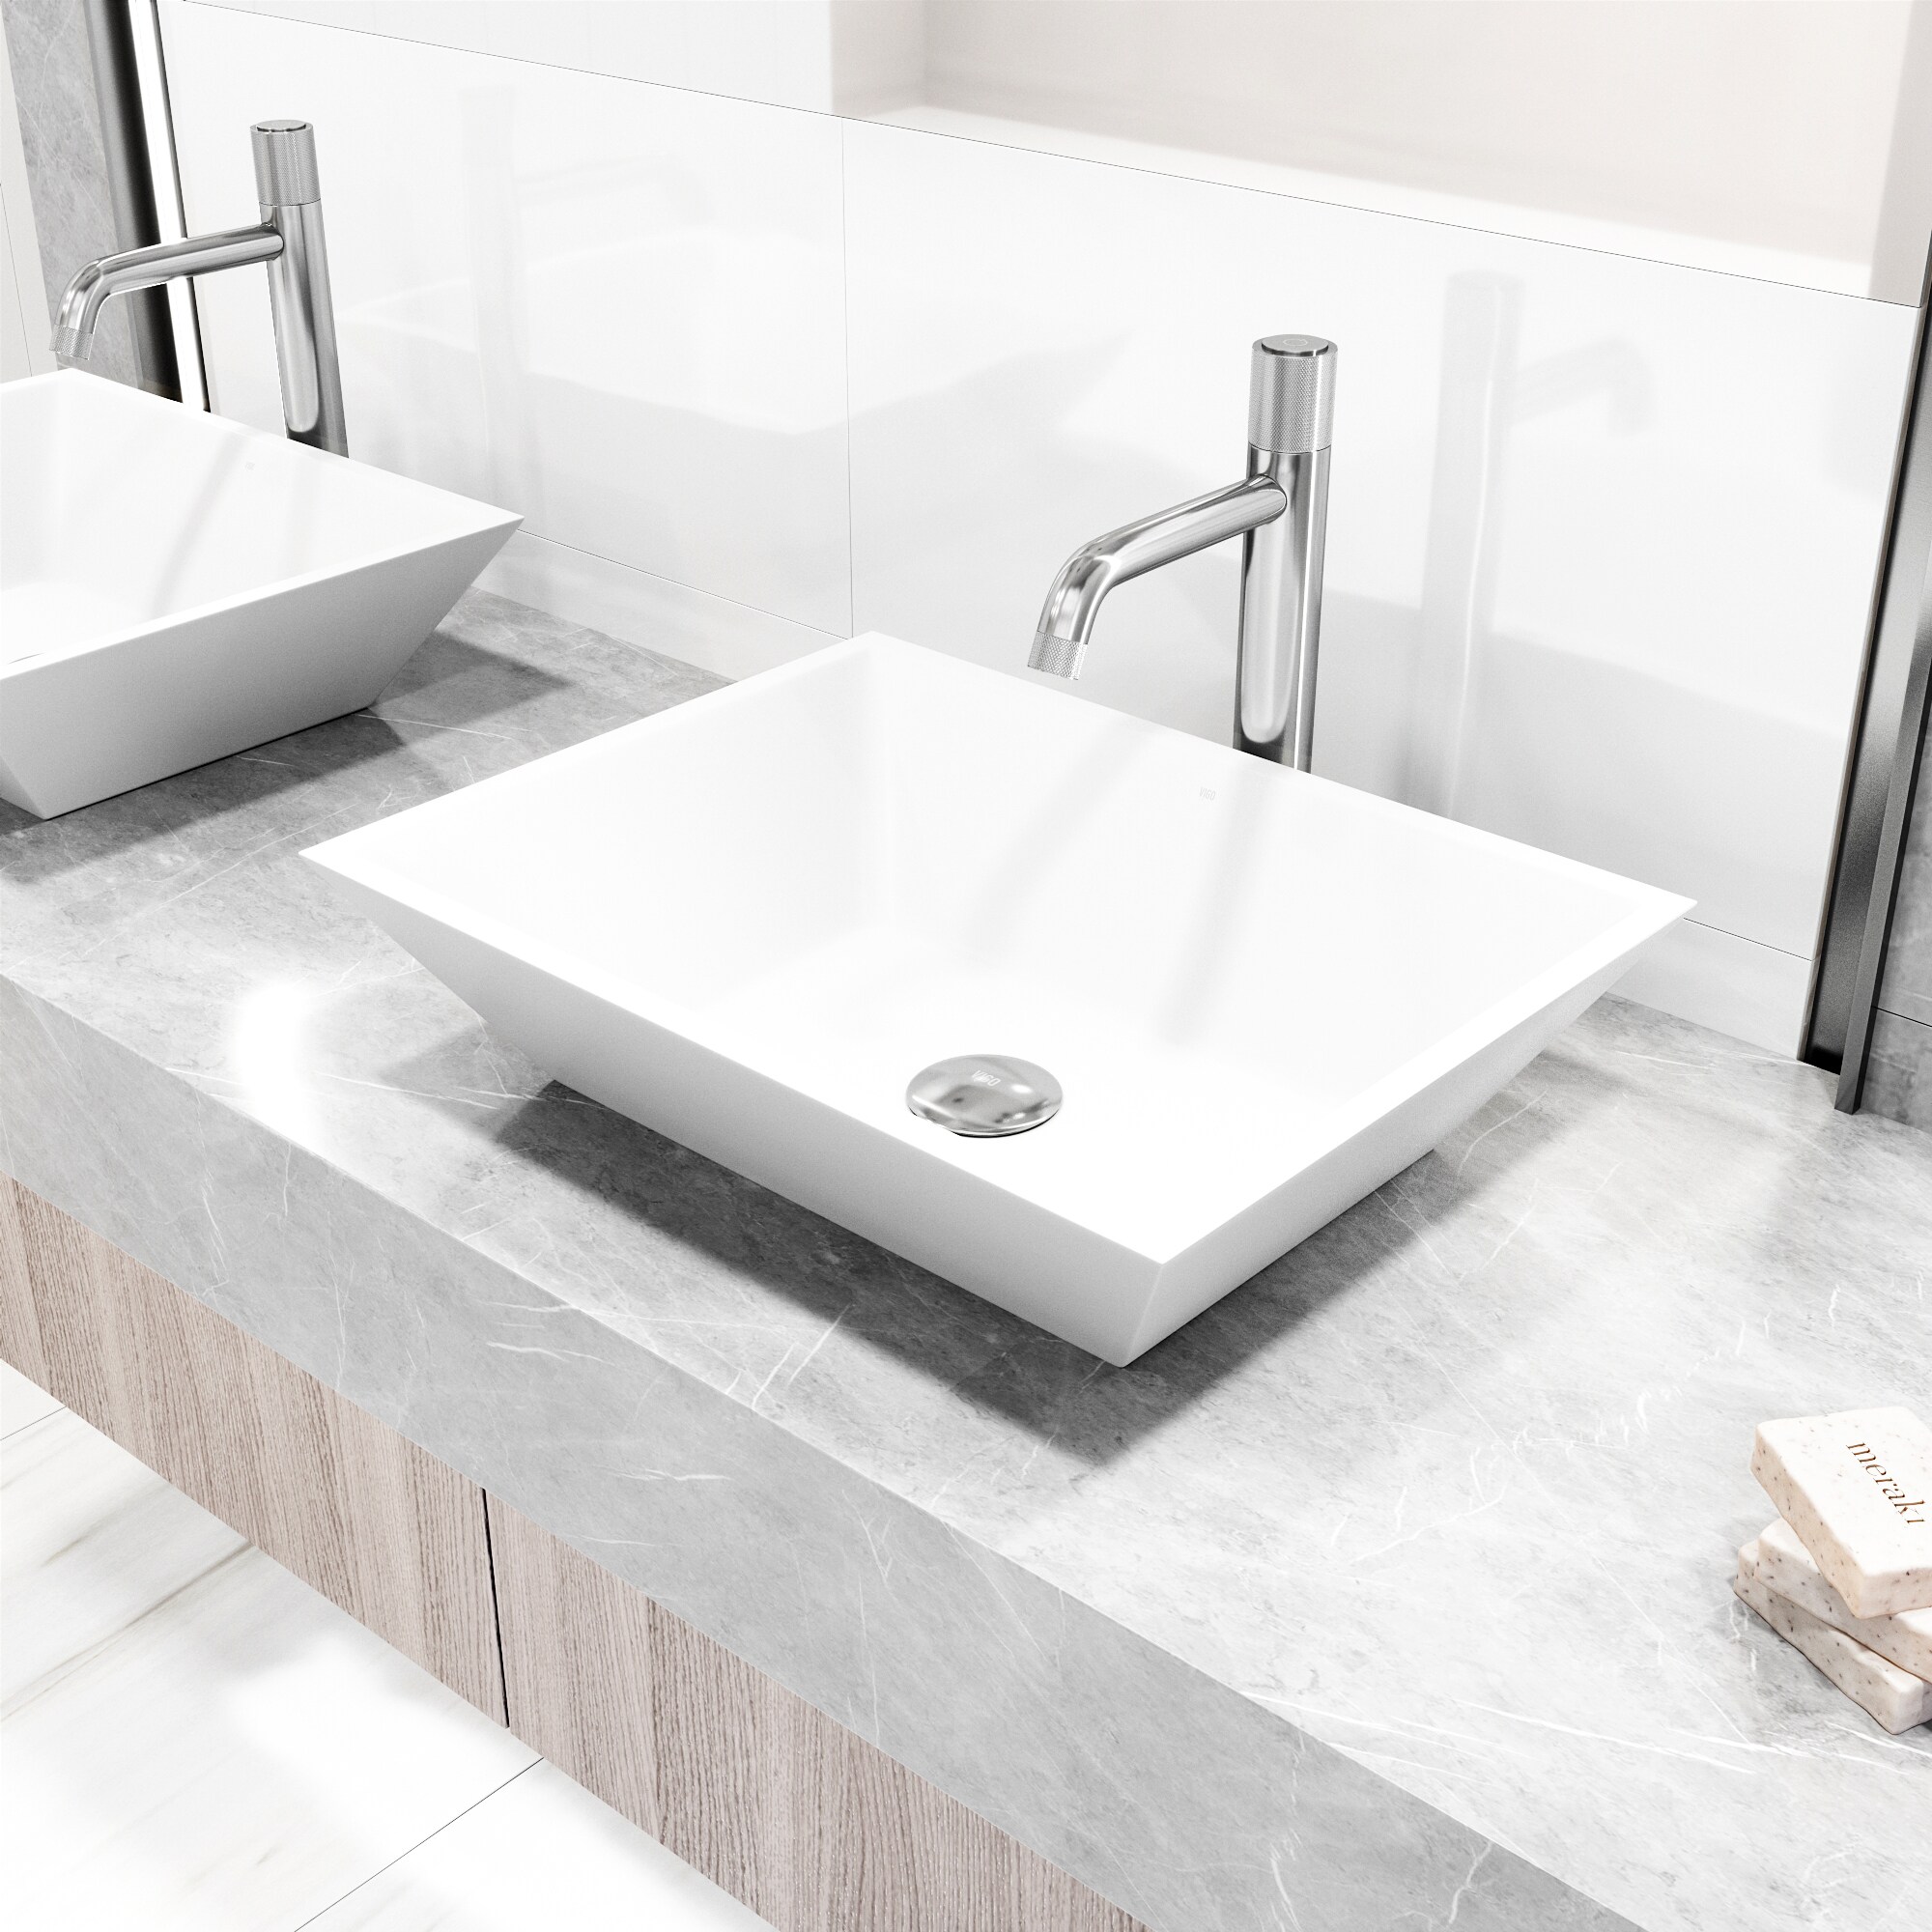 VIGO Apollo Chrome 1-handle Vessel WaterSense Low-arc Bathroom Sink Faucet